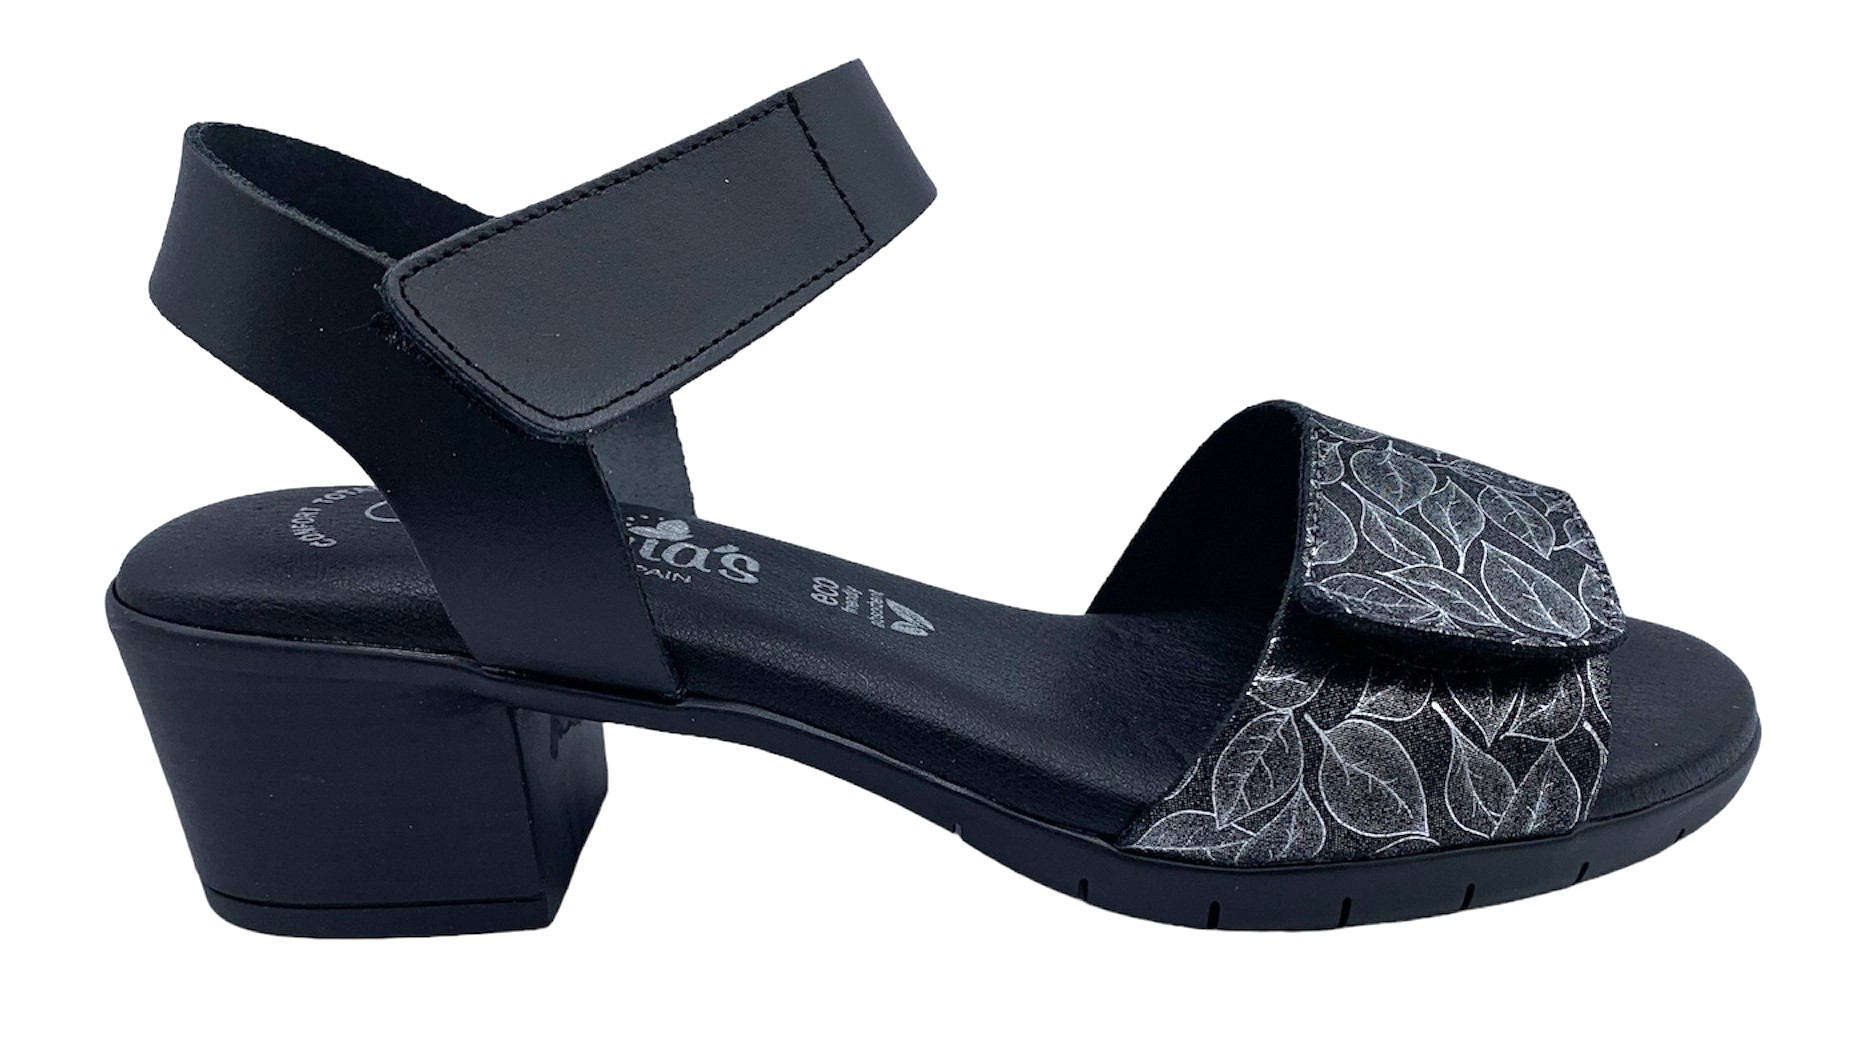 Dámské kožené sandále na podpatku MISSTIC 1172 černé Velikost: 39 (EU)